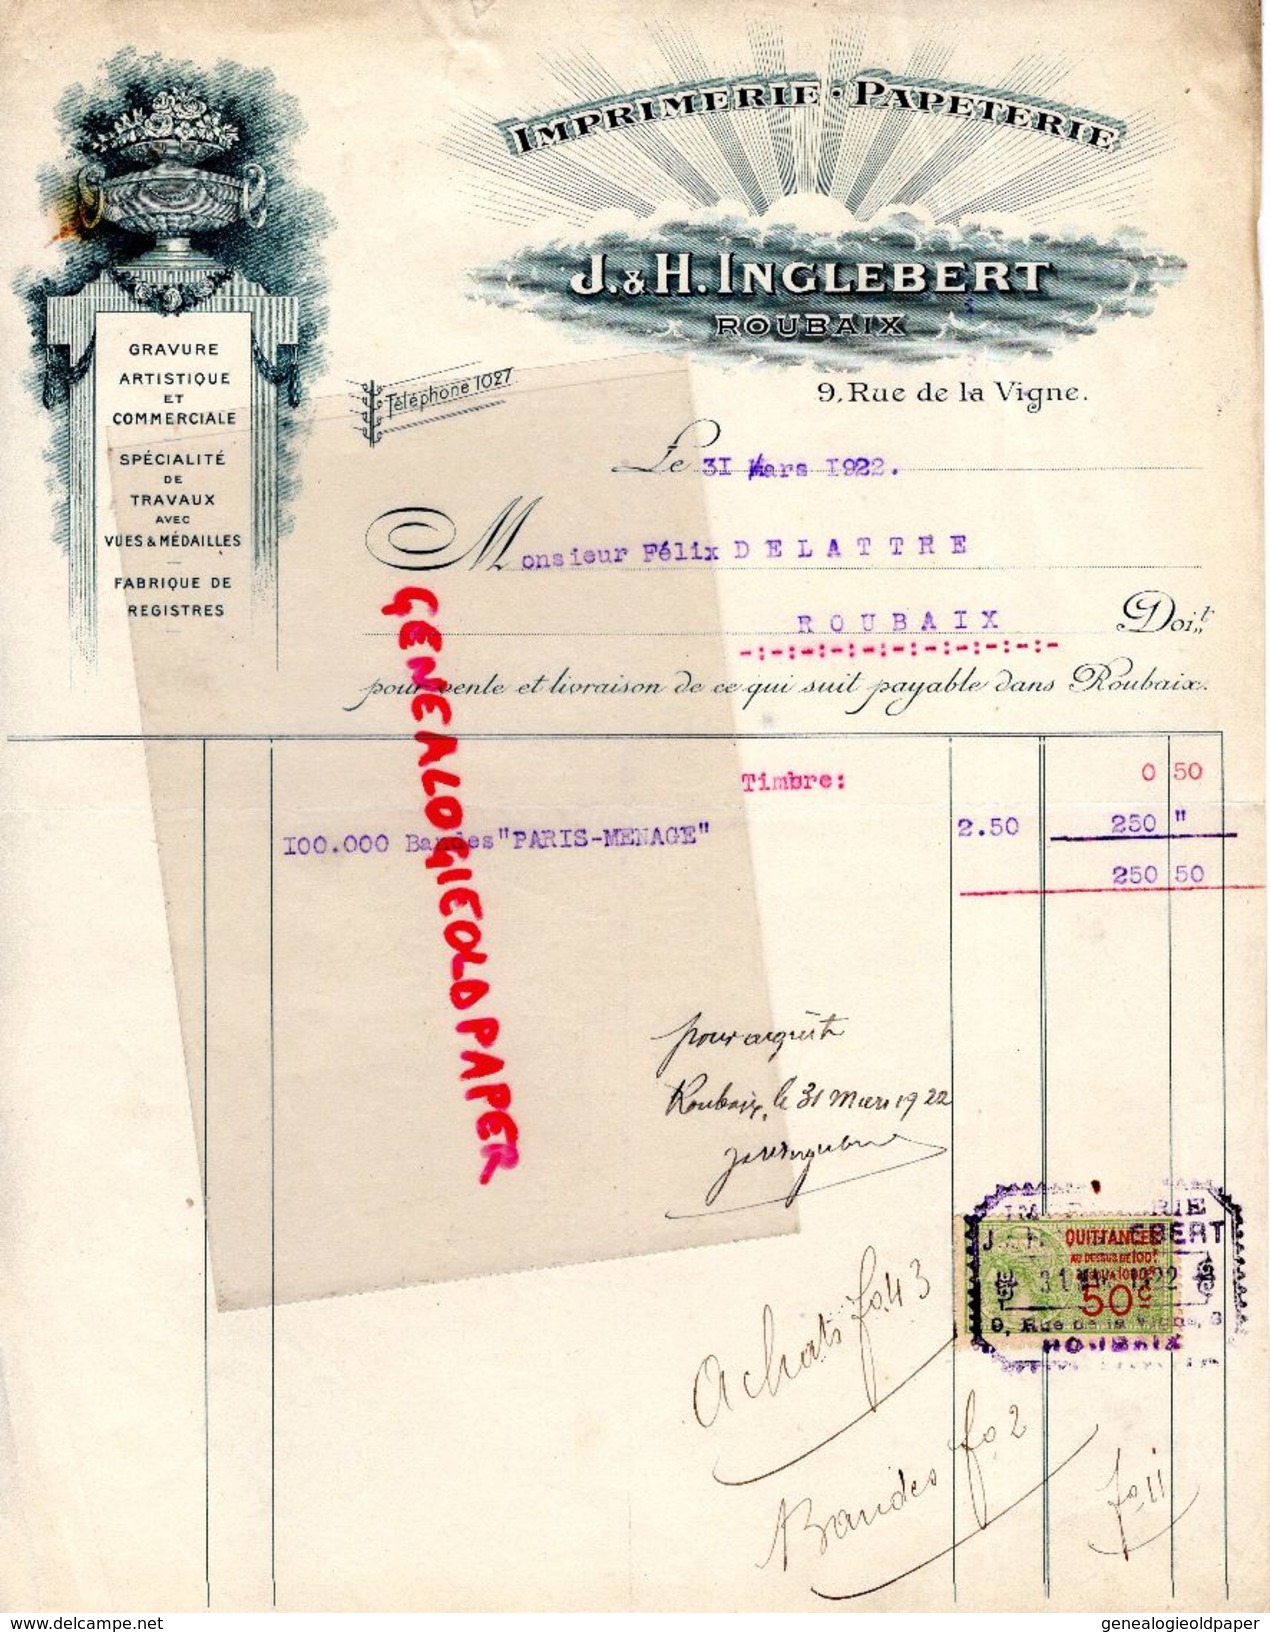 59- ROUBAIX- RARE FACTURE J. & H. INGLEBERT-IMPRIMERIE PAPETERIE-GRAVURE- 9 RUE DE LA VIGNE-FELIX DELATTRE- 1922 - Imprimerie & Papeterie